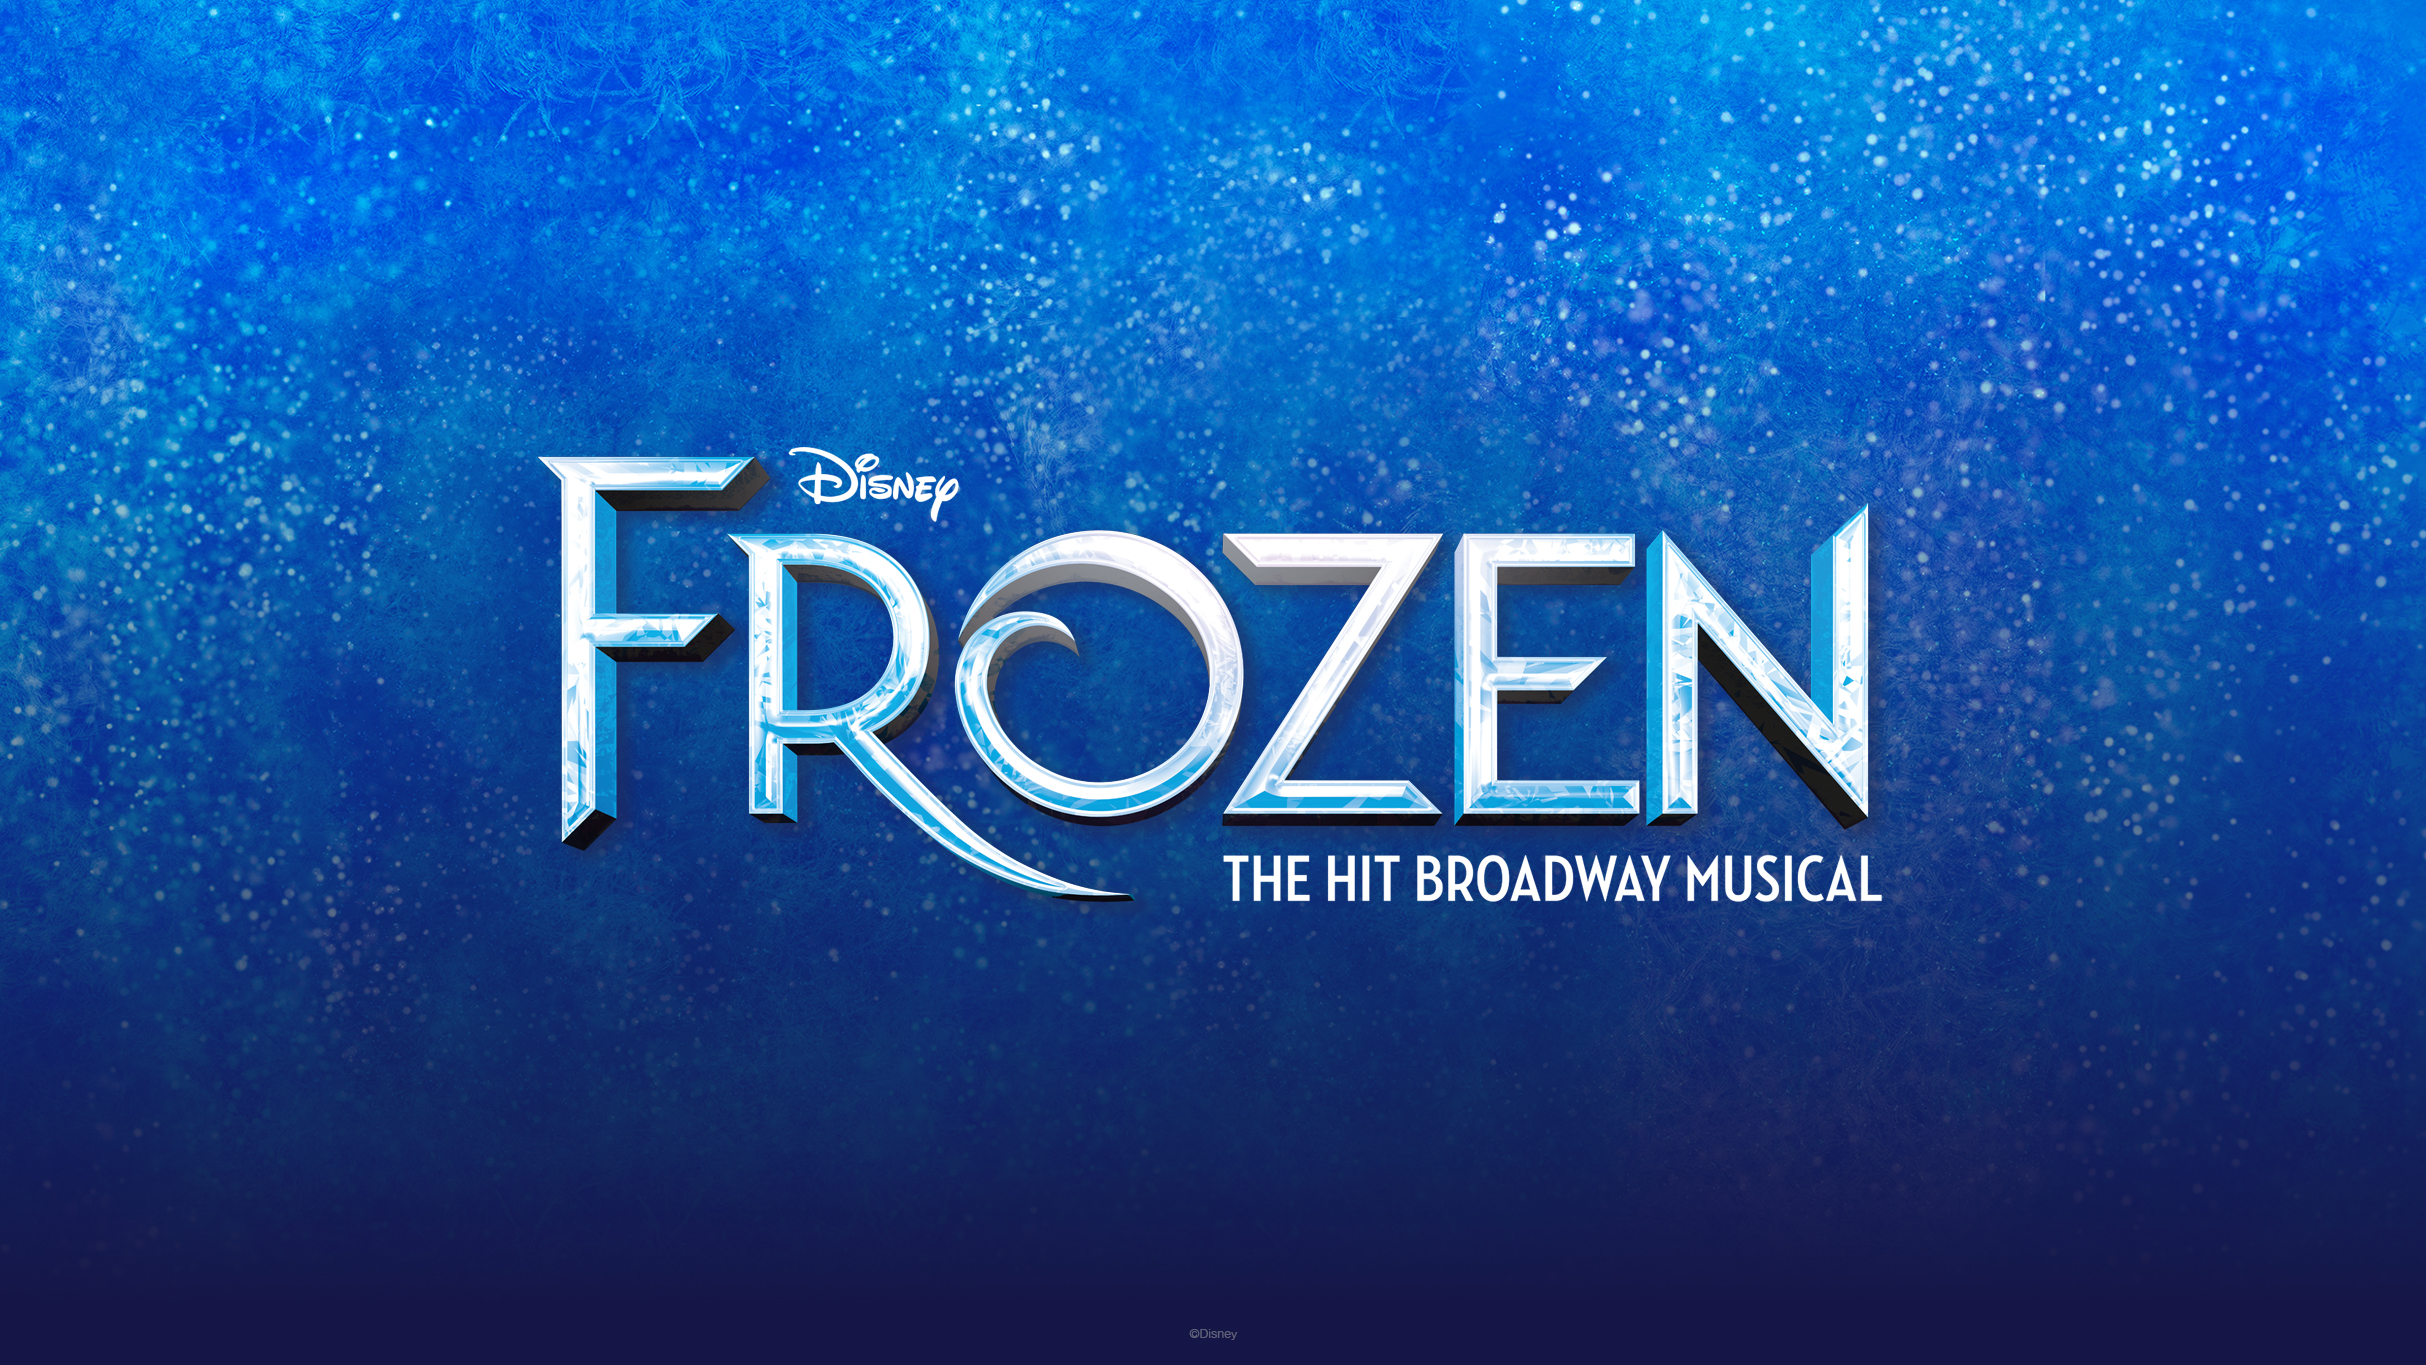 Broadway In Boise Presents Disney's Frozen